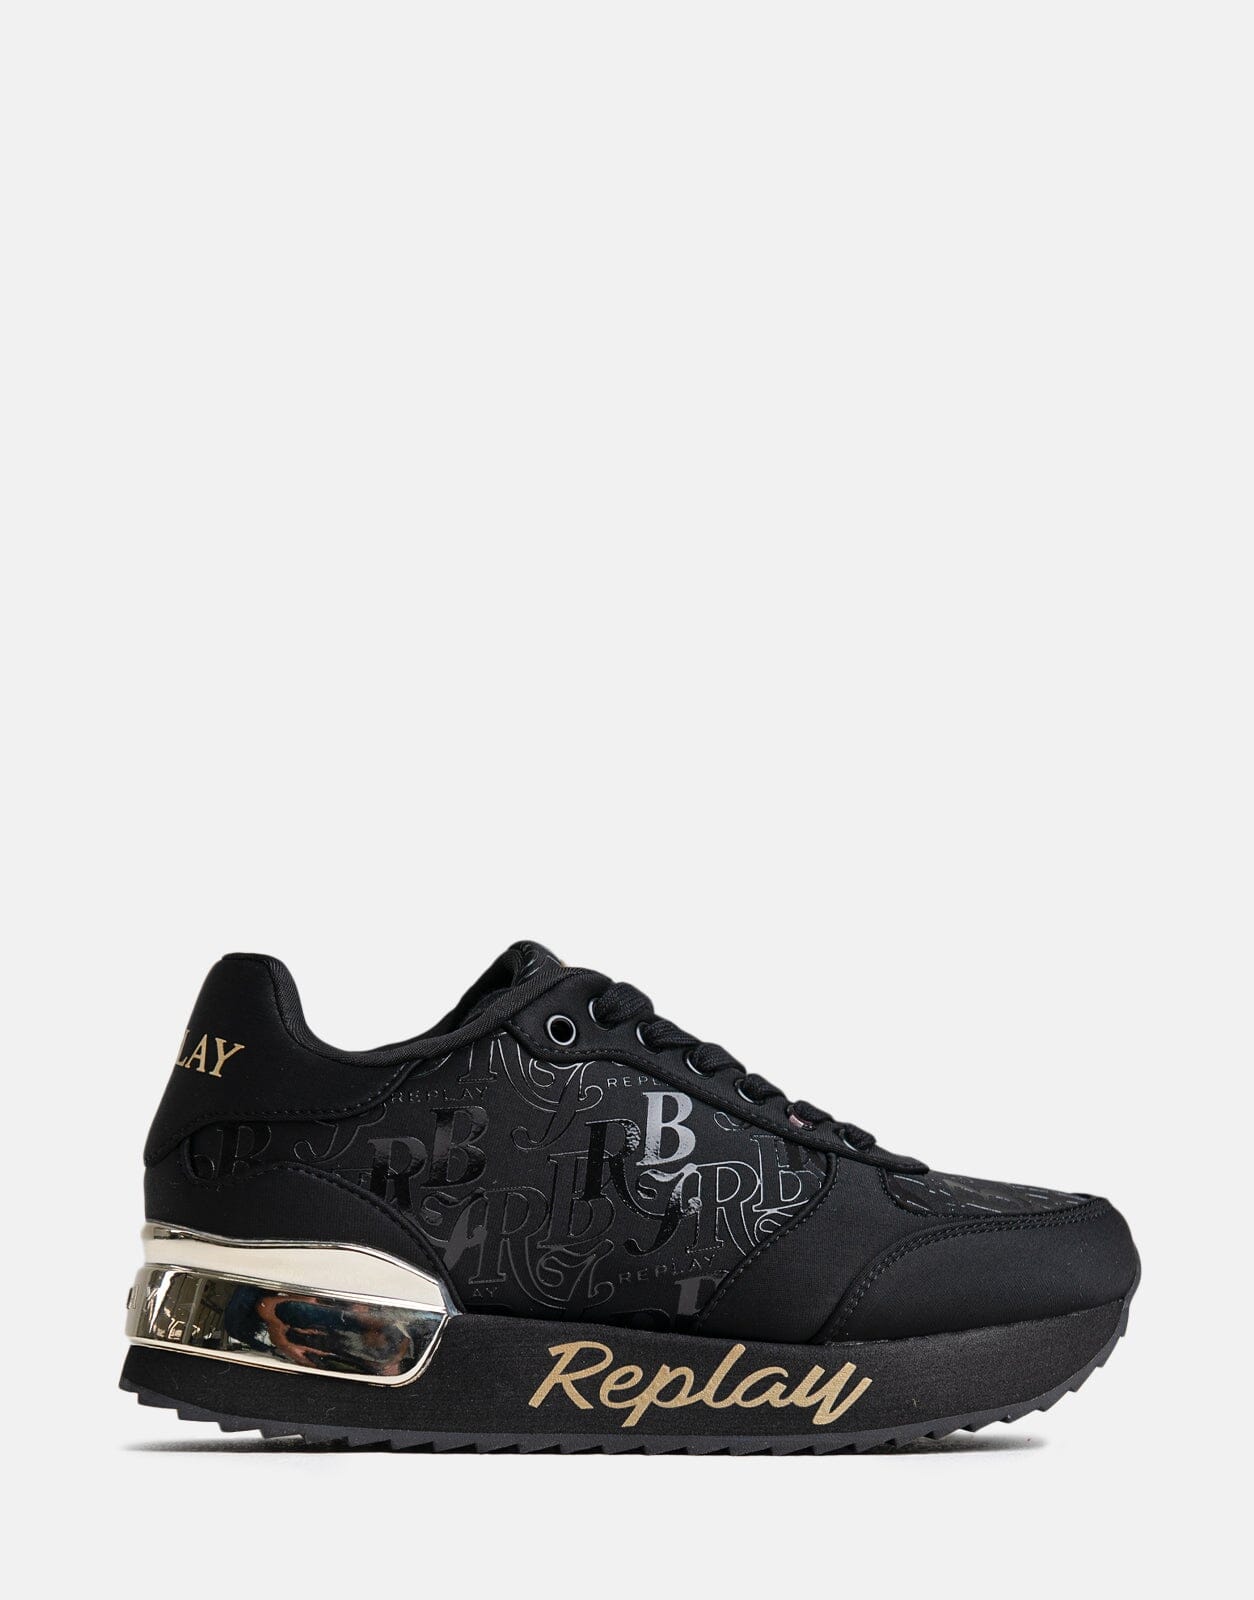 Replay Penny RBJ Black Sneakers Replay